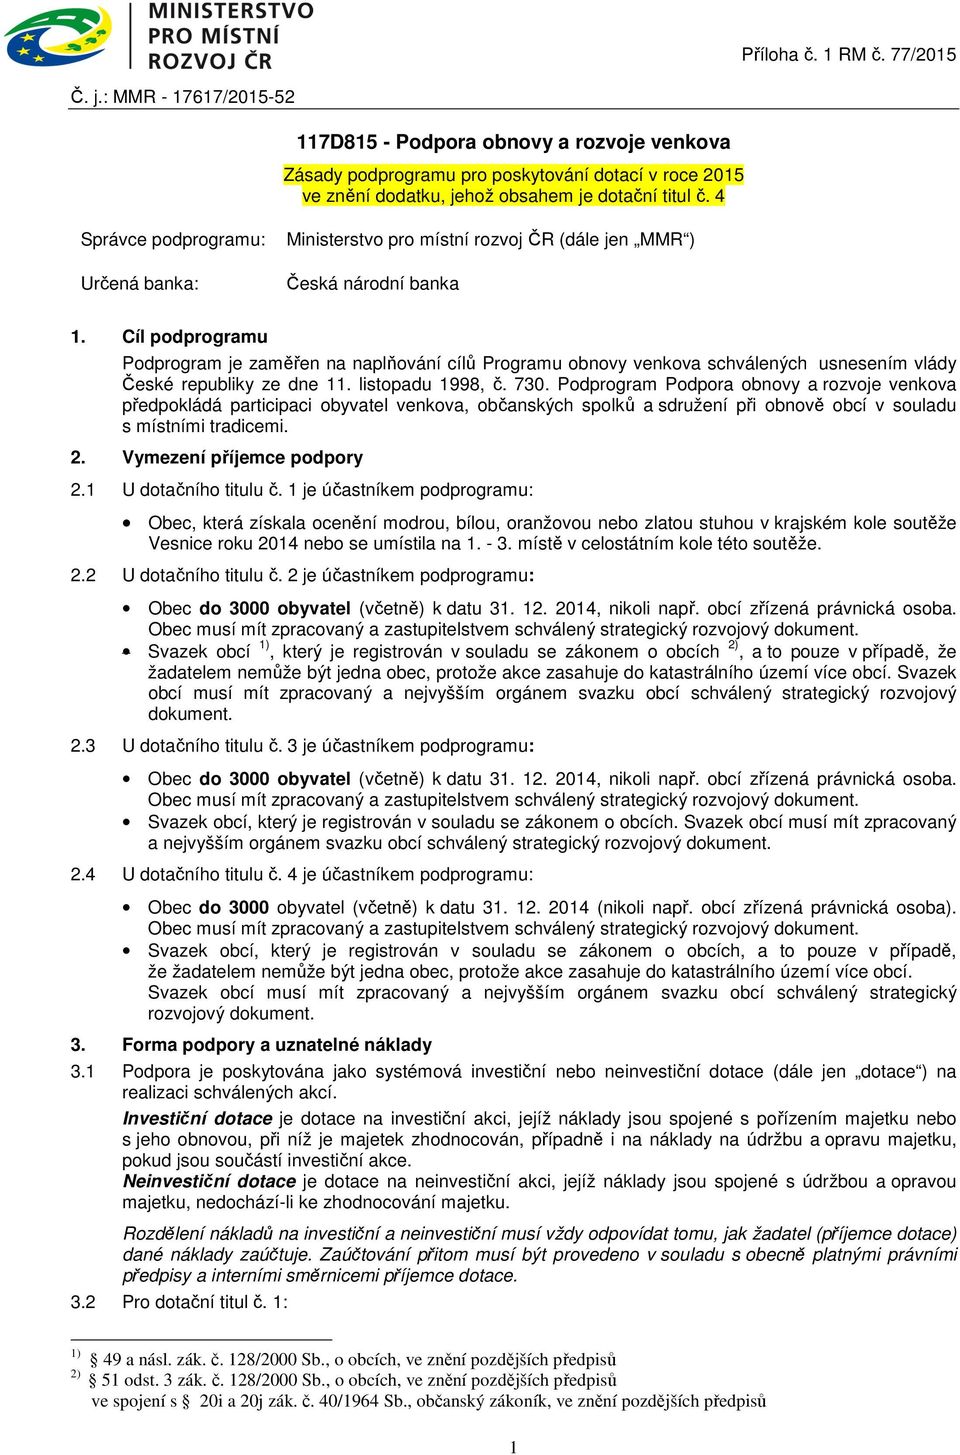 Cíl podprogramu Podprogram je zaměřen na naplňování cílů Programu obnovy venkova schválených usnesením vlády České republiky ze dne 11. listopadu 1998, č. 730.